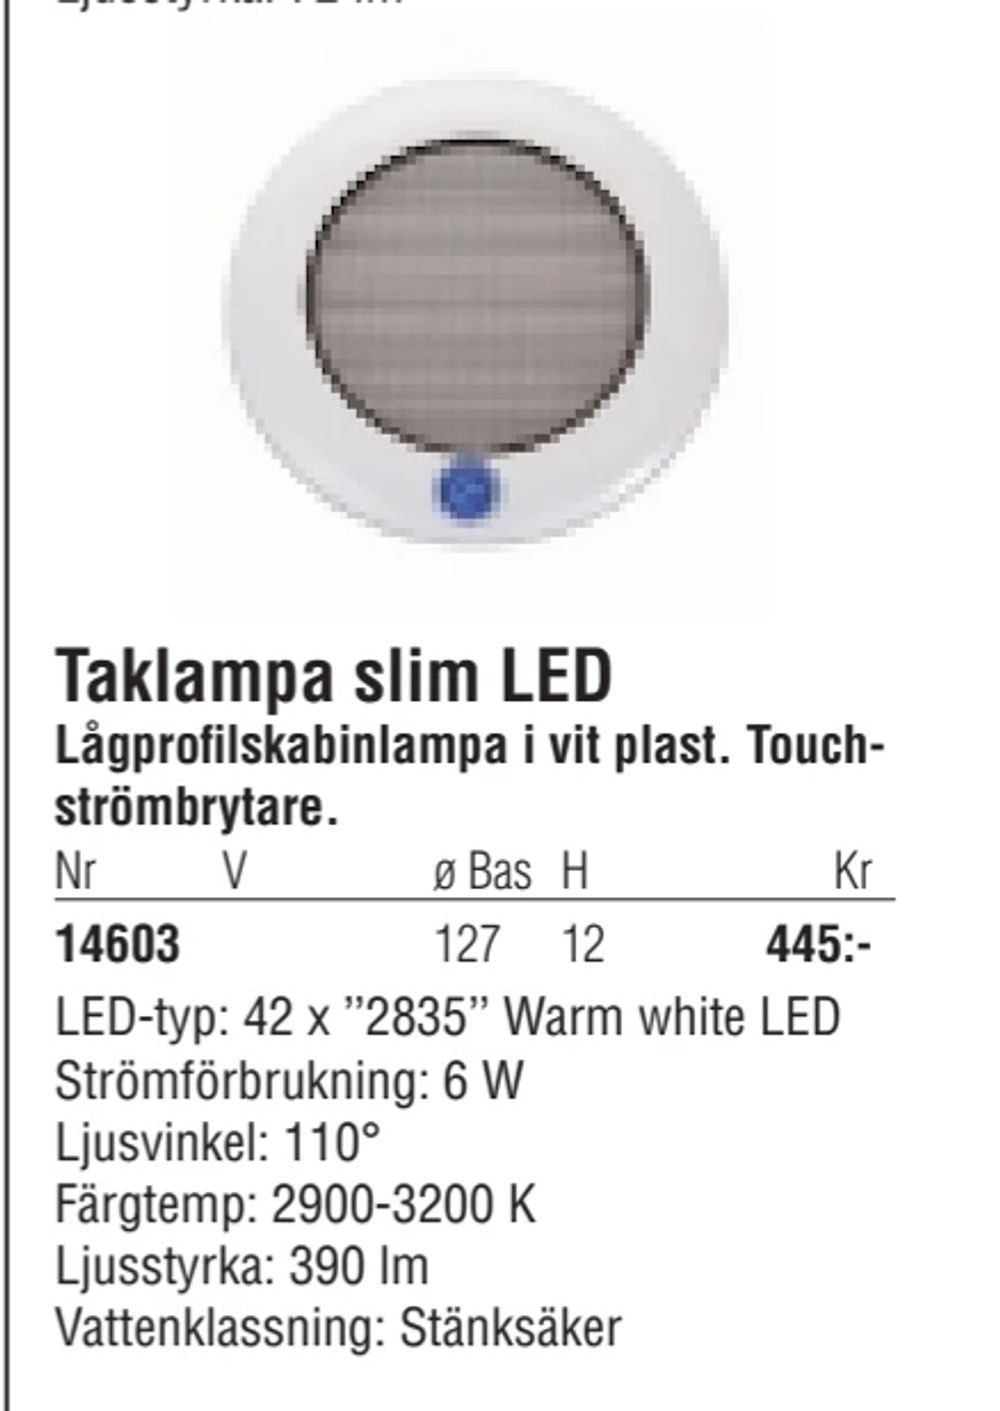 Erbjudanden på Taklampa slim LED från Erlandsons Brygga för 445 kr